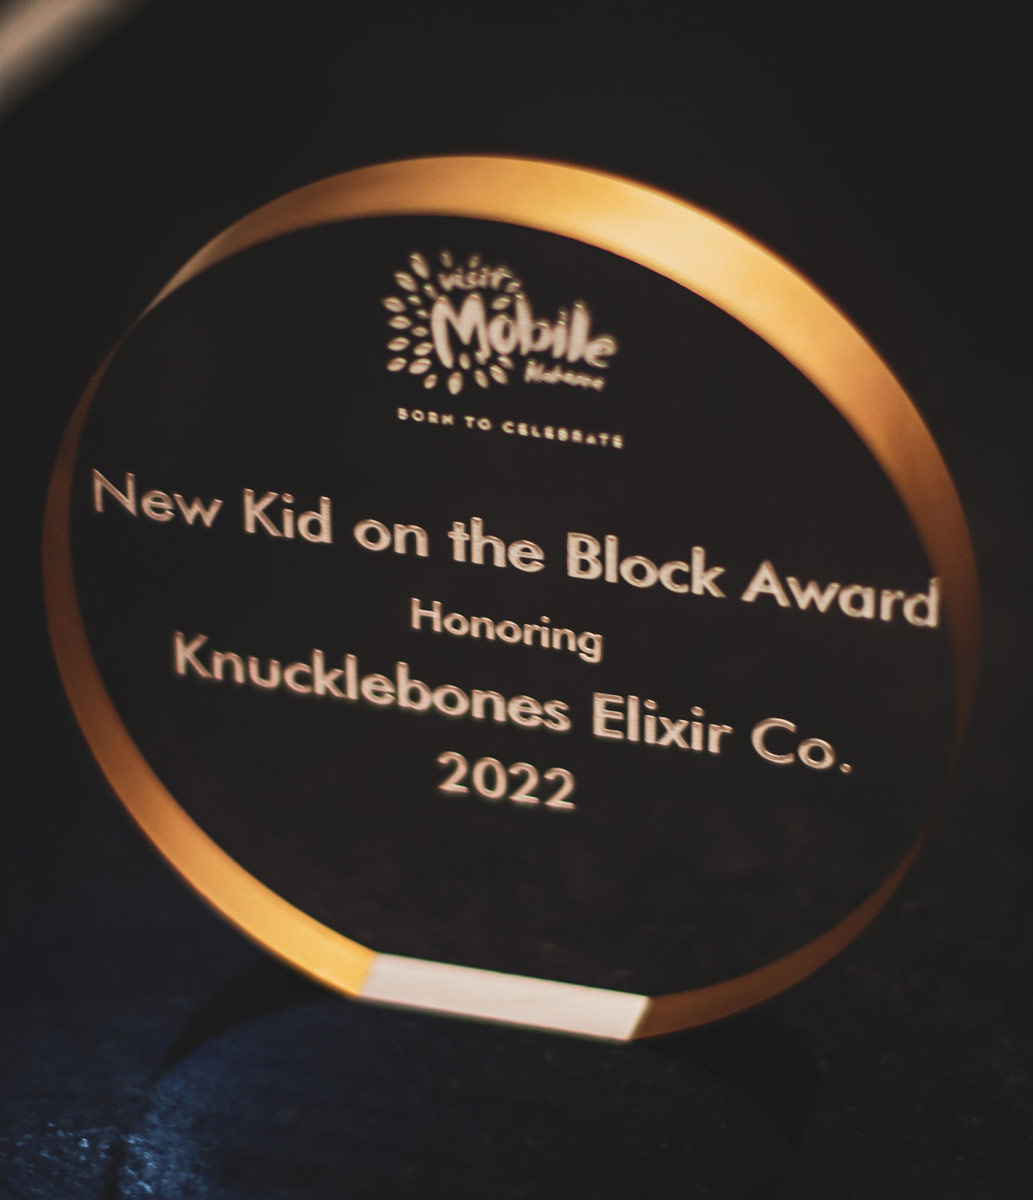 Knucklebones Elixir Wins Visit Mobile Award